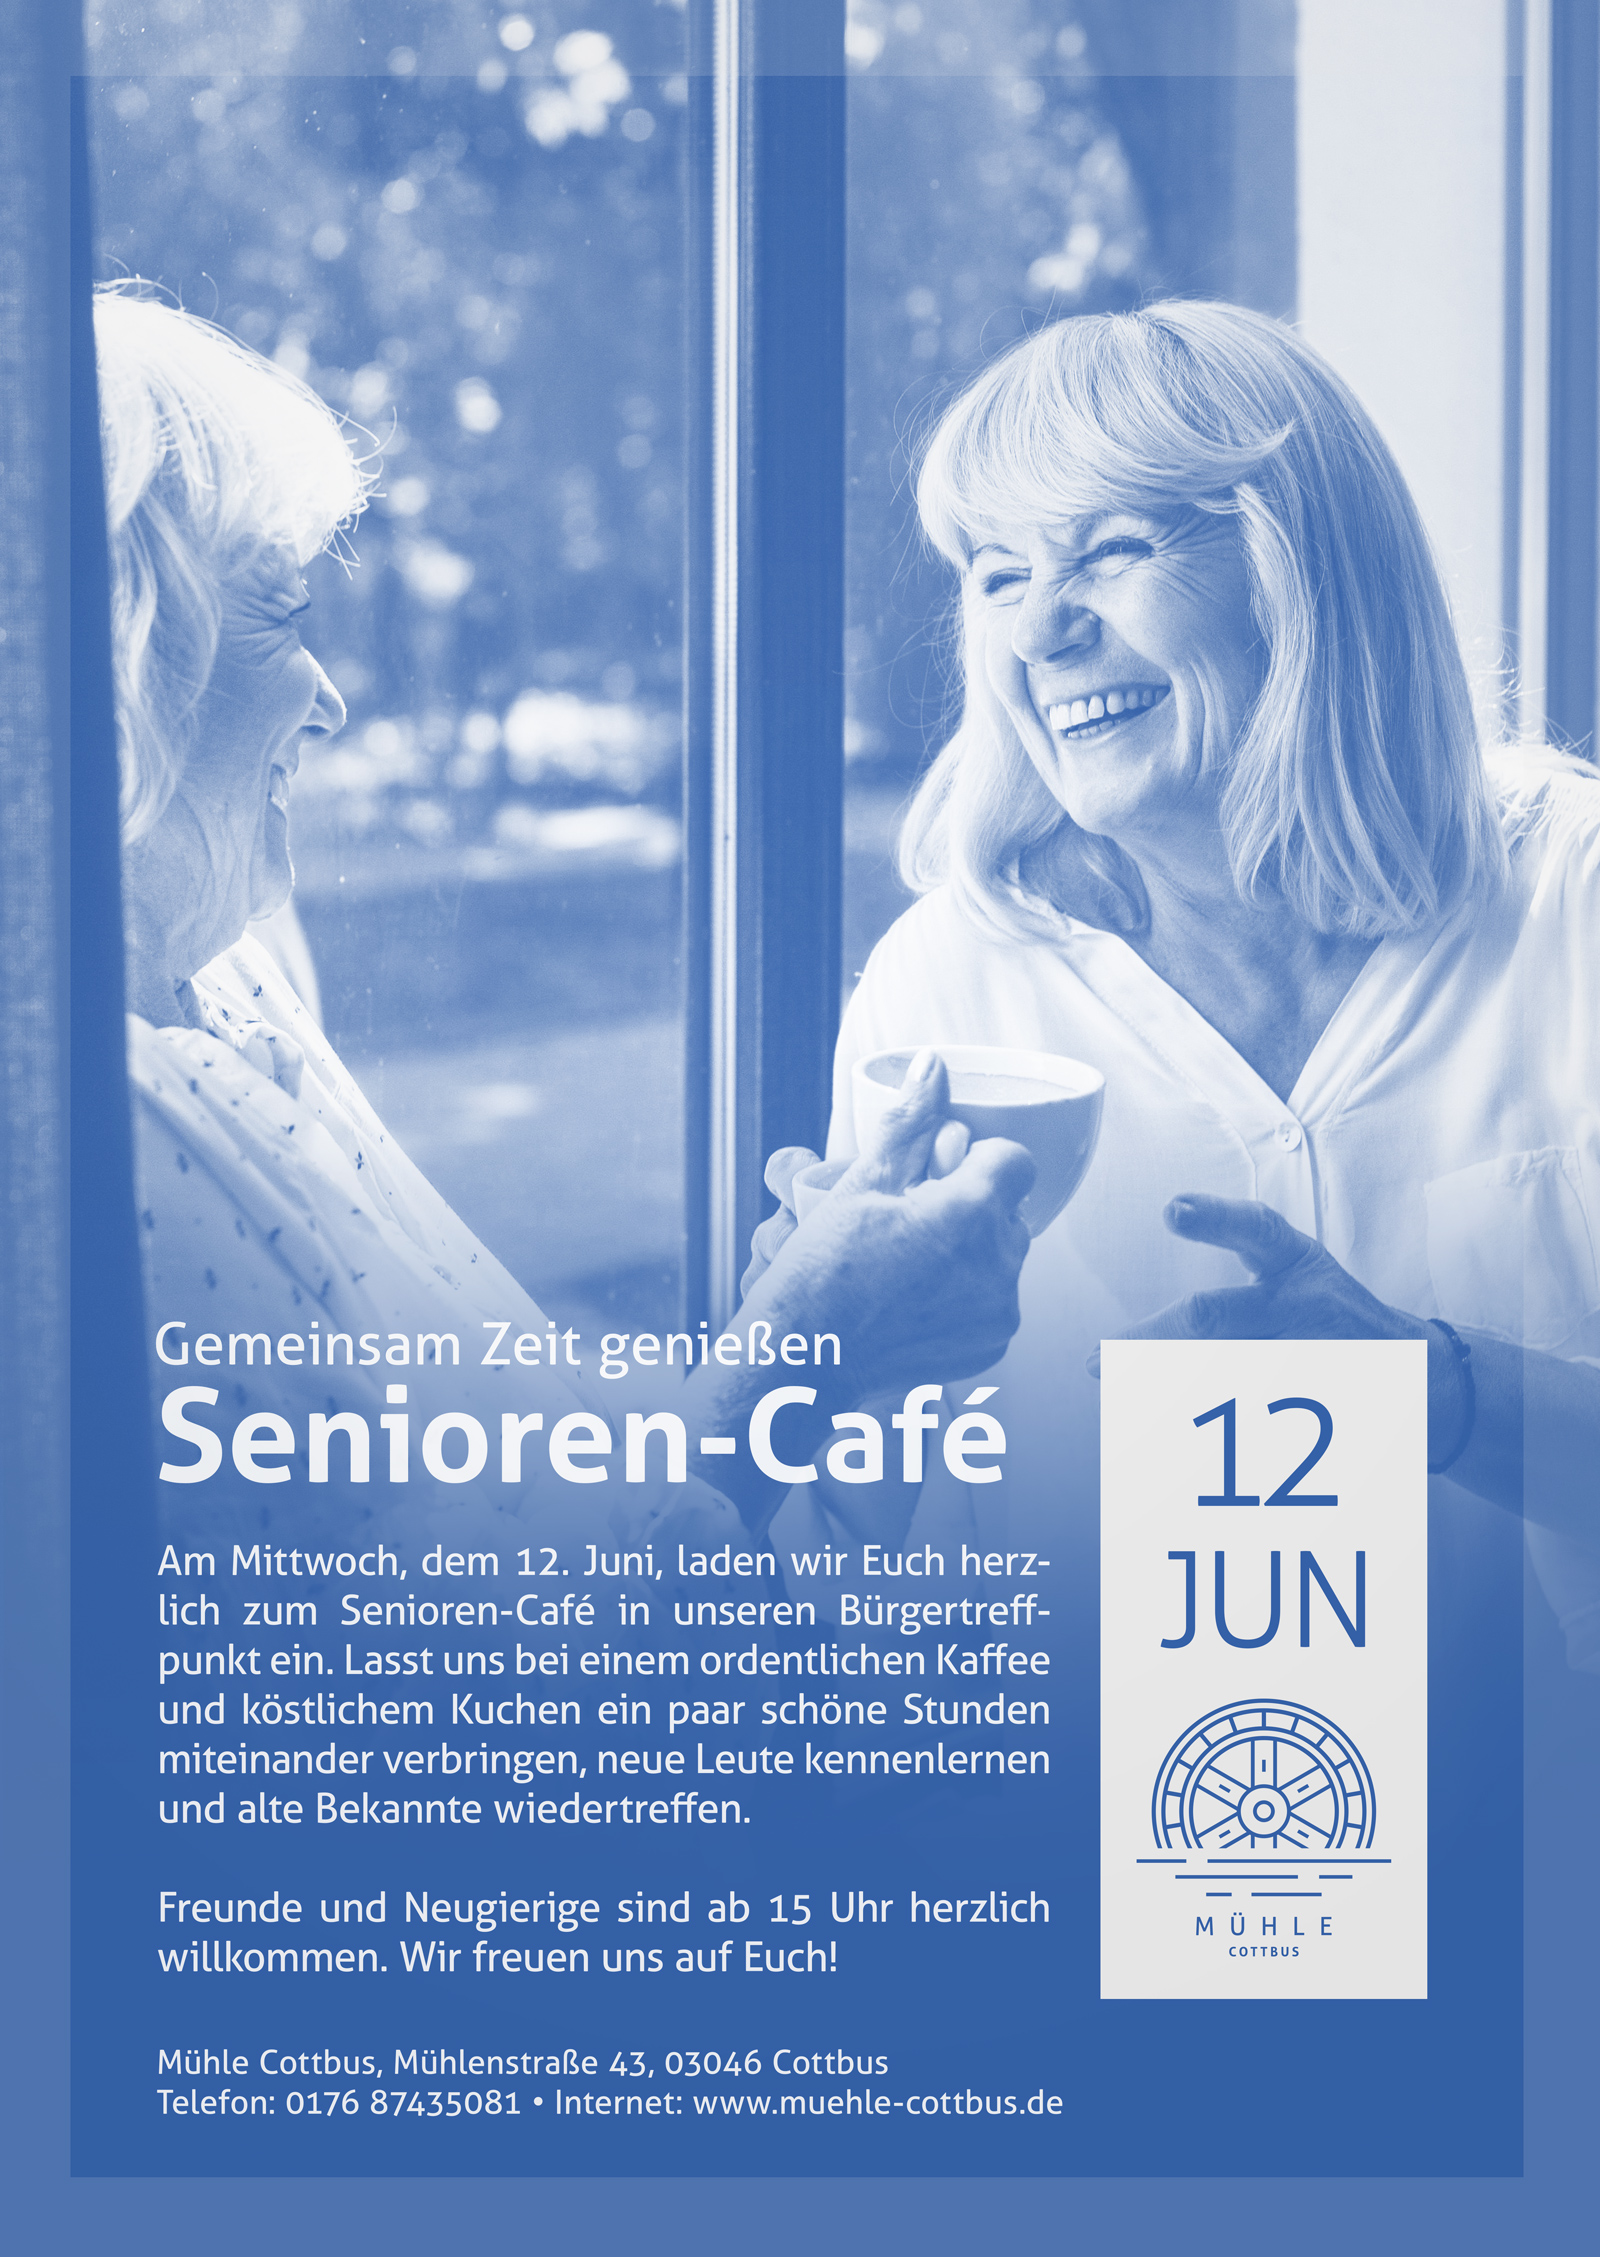 Gemeinsam Zeit genießen: Senioren-Café